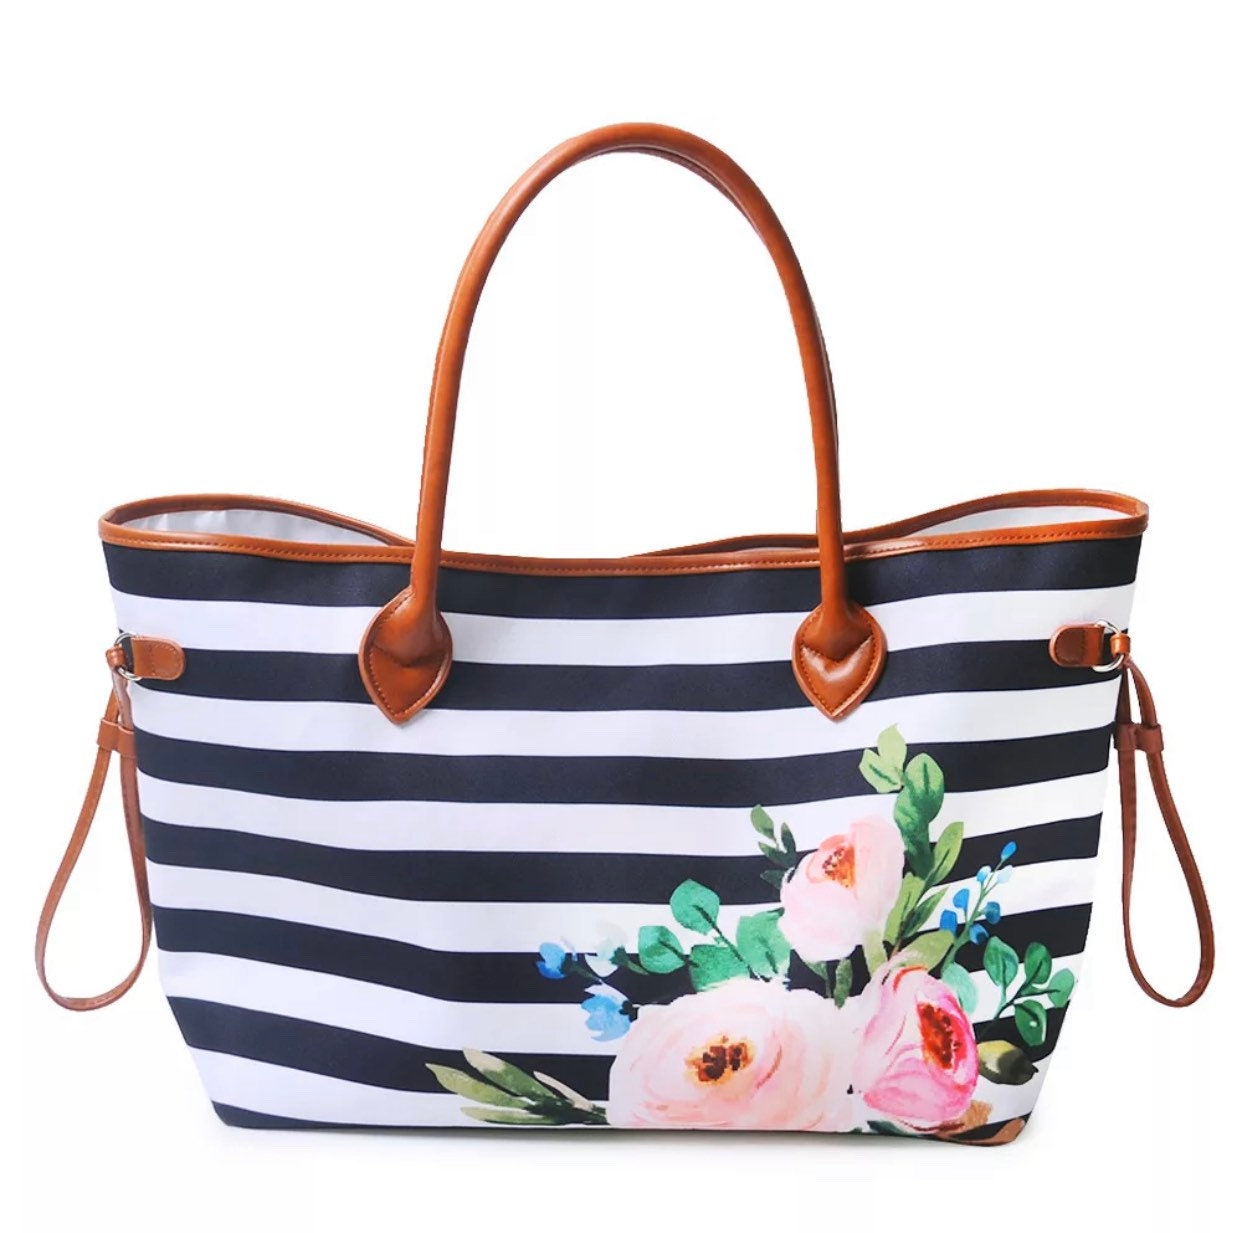 Black and white stripe floral weekender bag overnight bag | Etsy